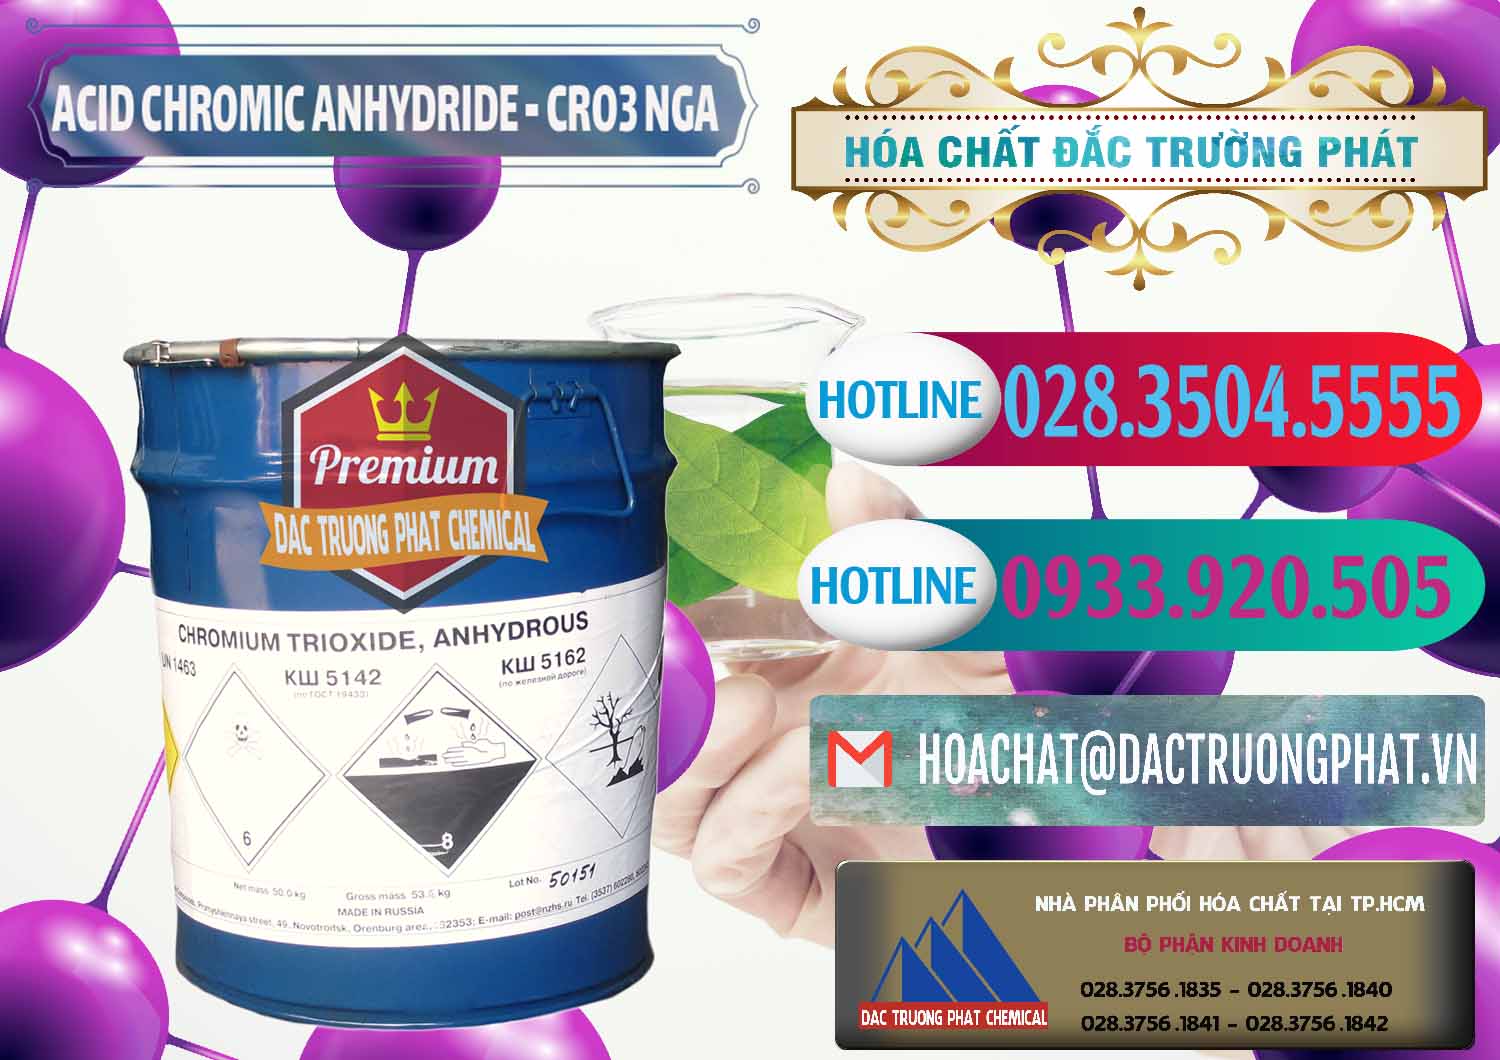 Đơn vị bán và cung cấp Acid Chromic Anhydride - Cromic CRO3 Nga Russia - 0006 - Đơn vị chuyên nhập khẩu - phân phối hóa chất tại TP.HCM - truongphat.vn